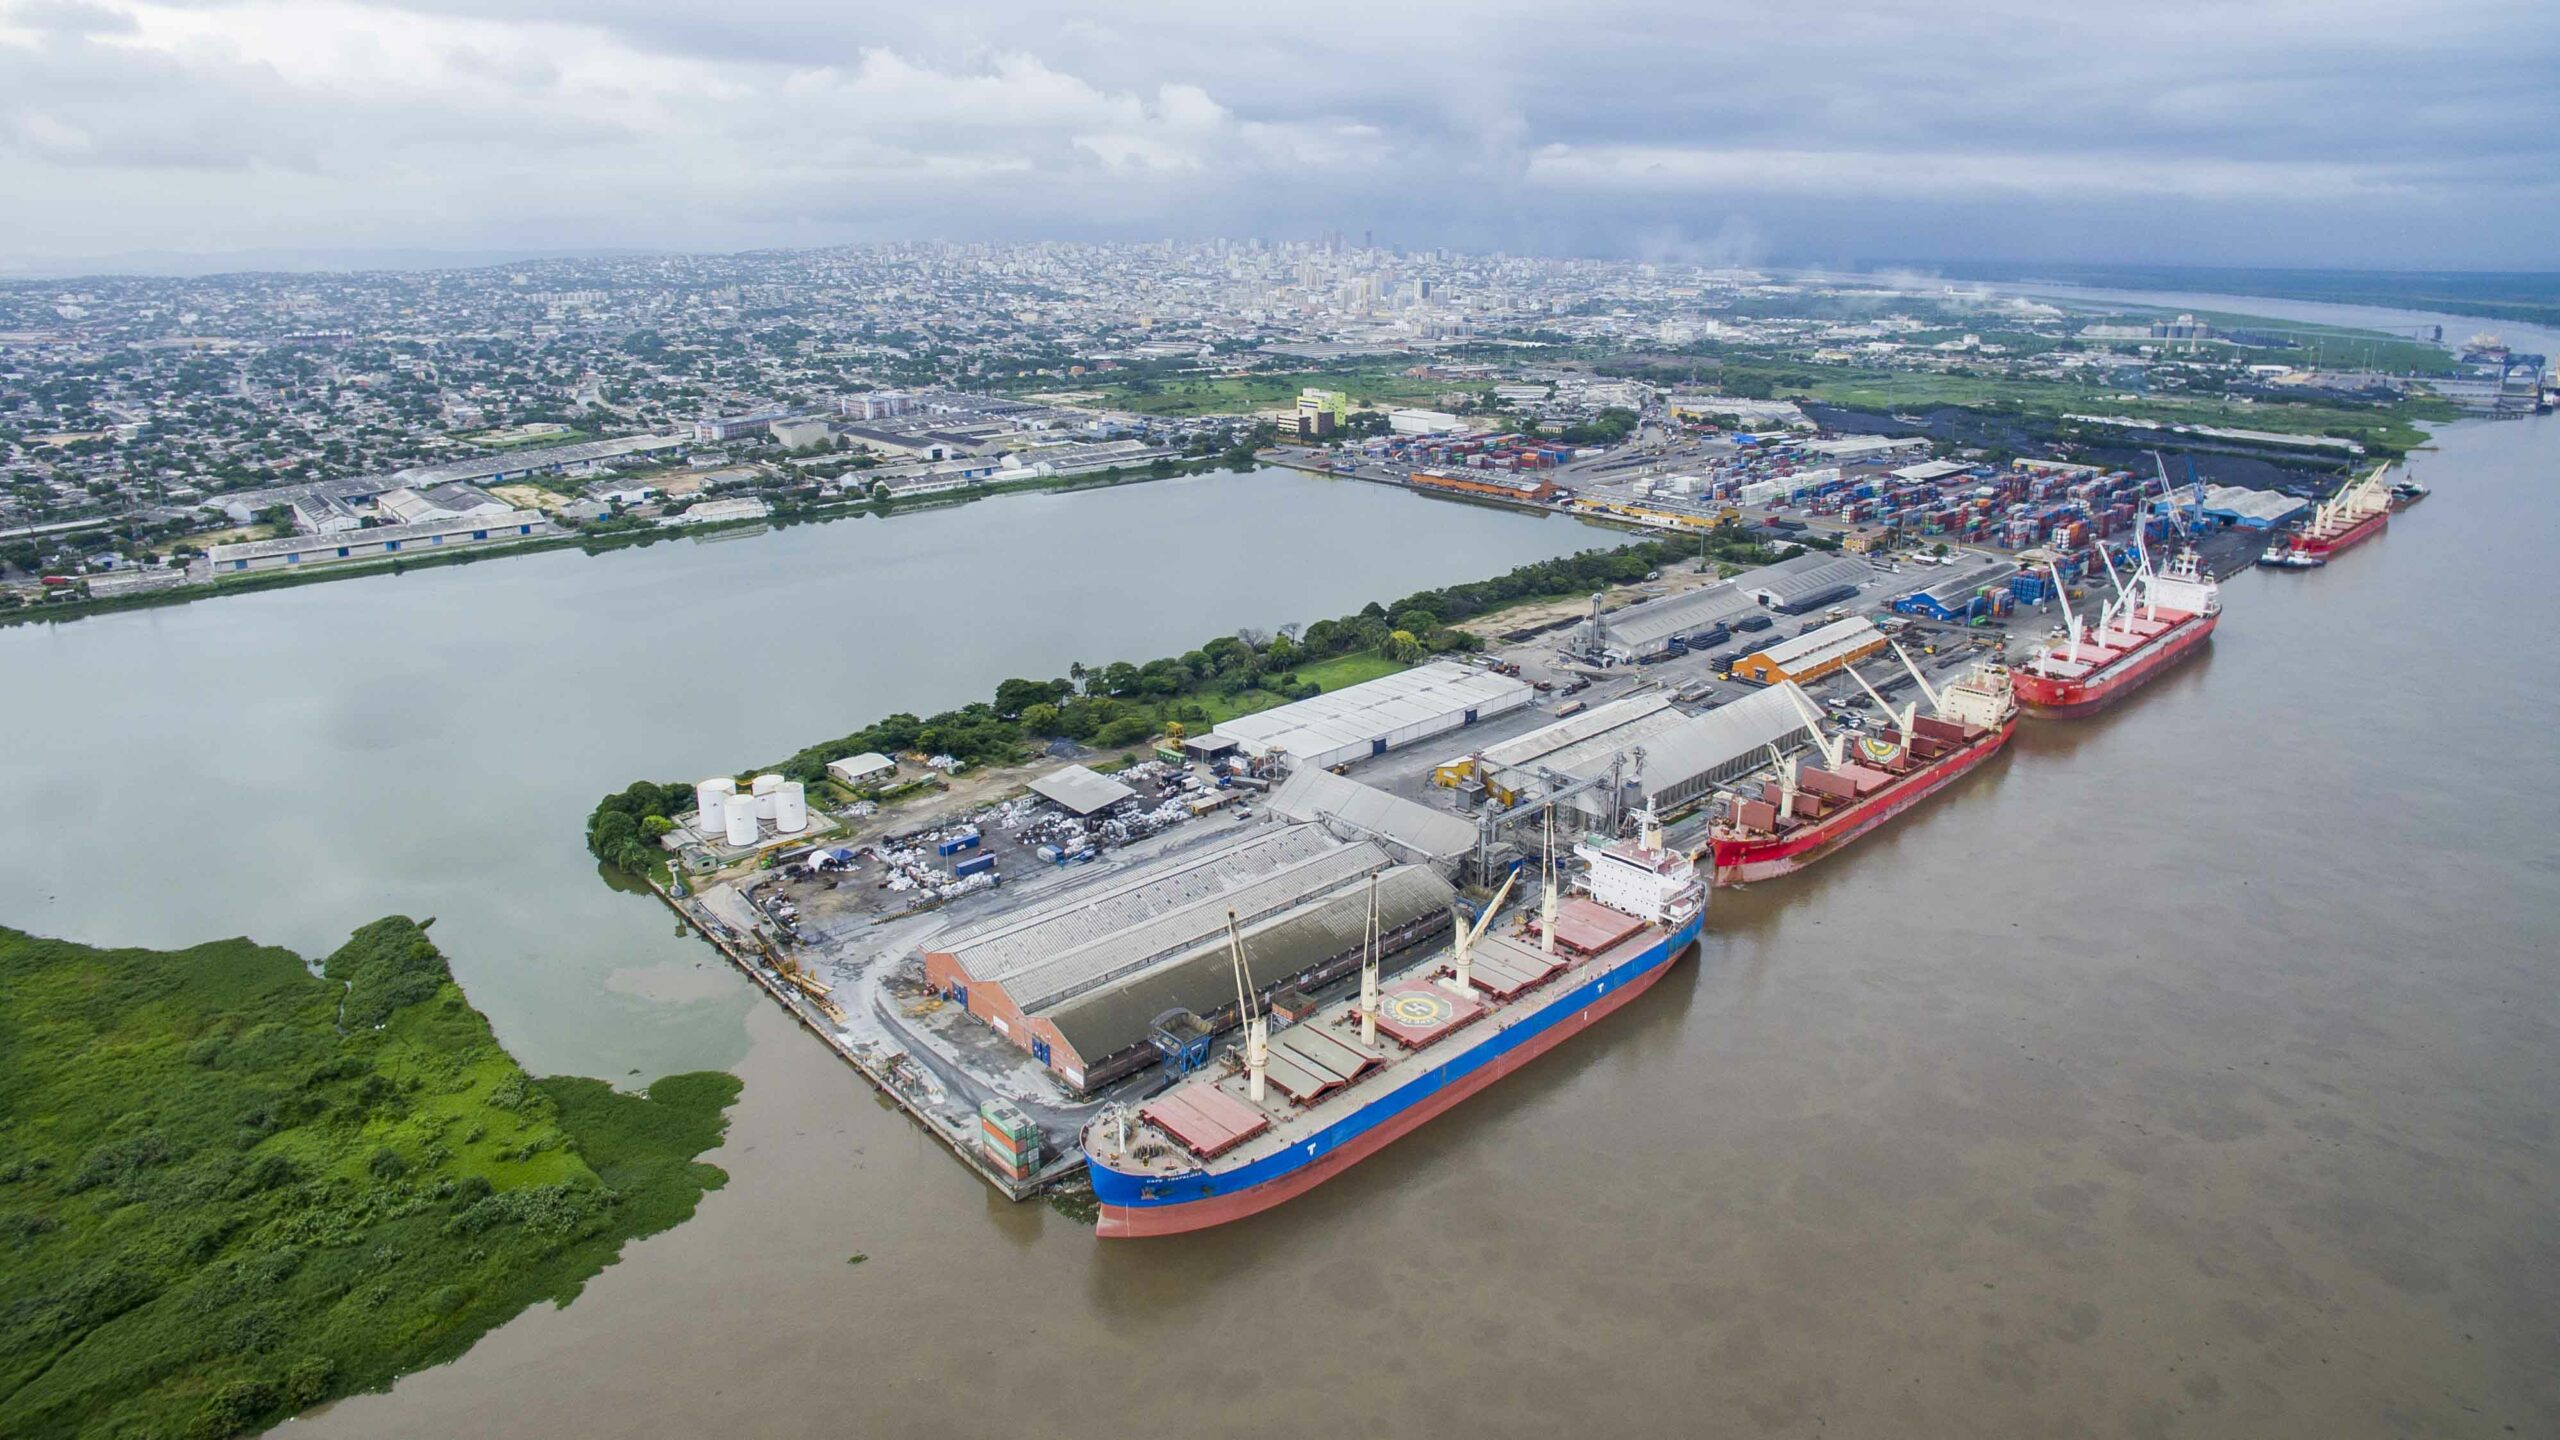 Restricciones Temporales en la Zona Portuaria de Barranquilla Debido a Fuertes Vientos